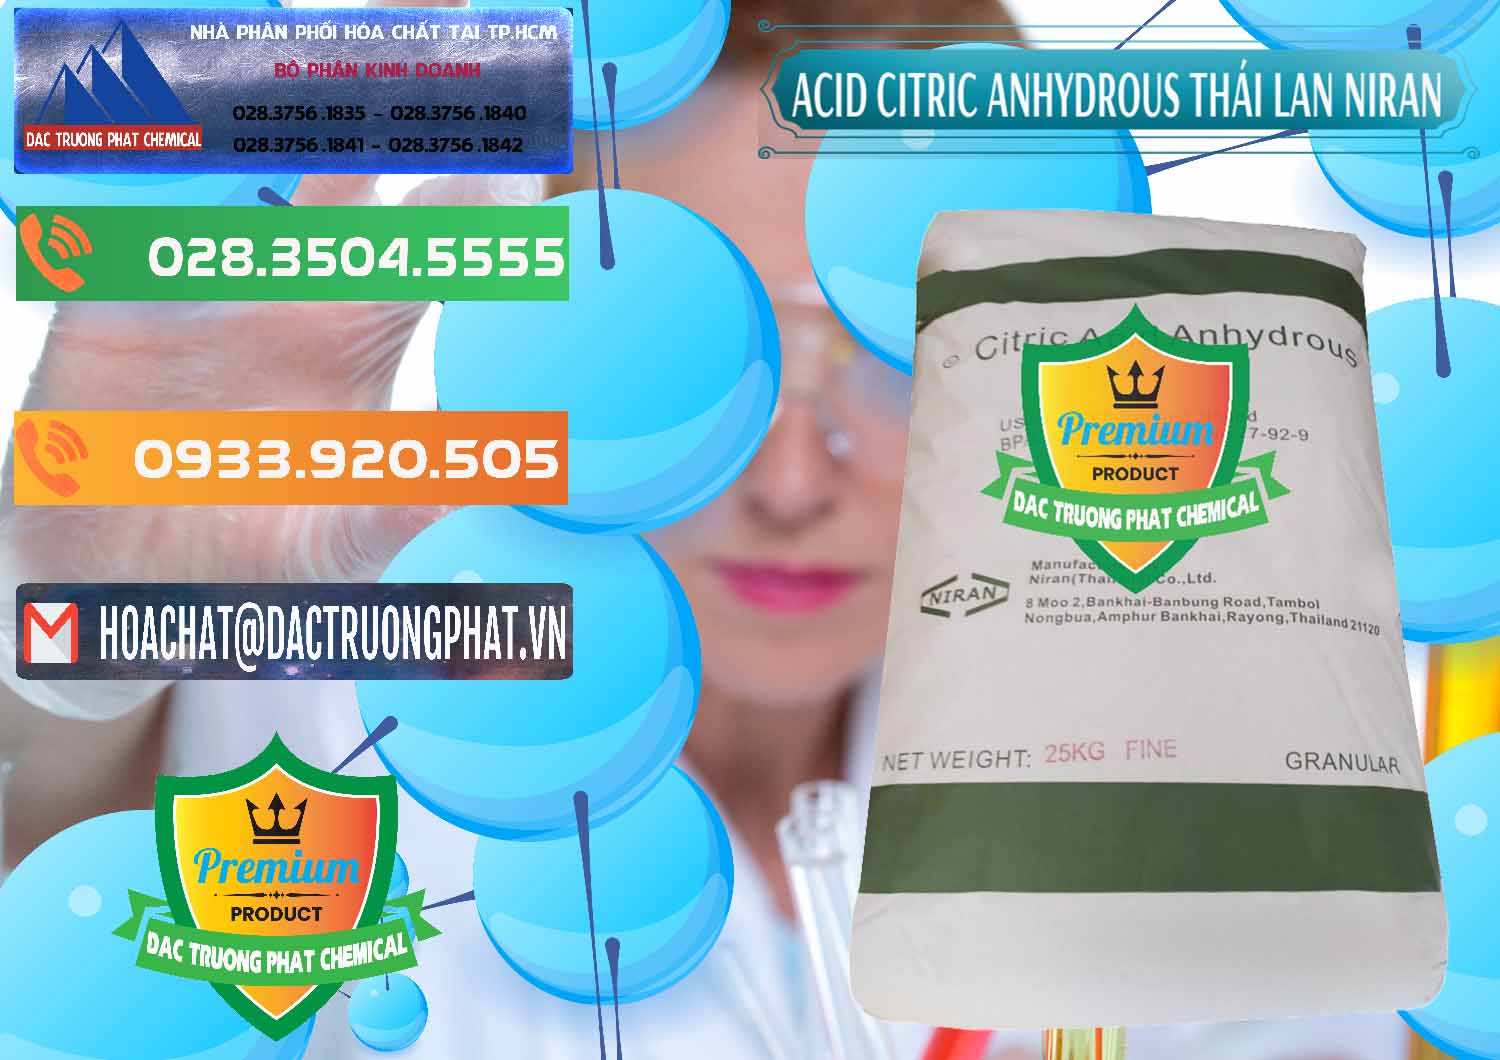 Cty bán - cung cấp Acid Citric - Axit Citric Anhydrous - Thái Lan Niran - 0231 - Công ty chuyên bán và cung cấp hóa chất tại TP.HCM - hoachatxulynuoc.com.vn